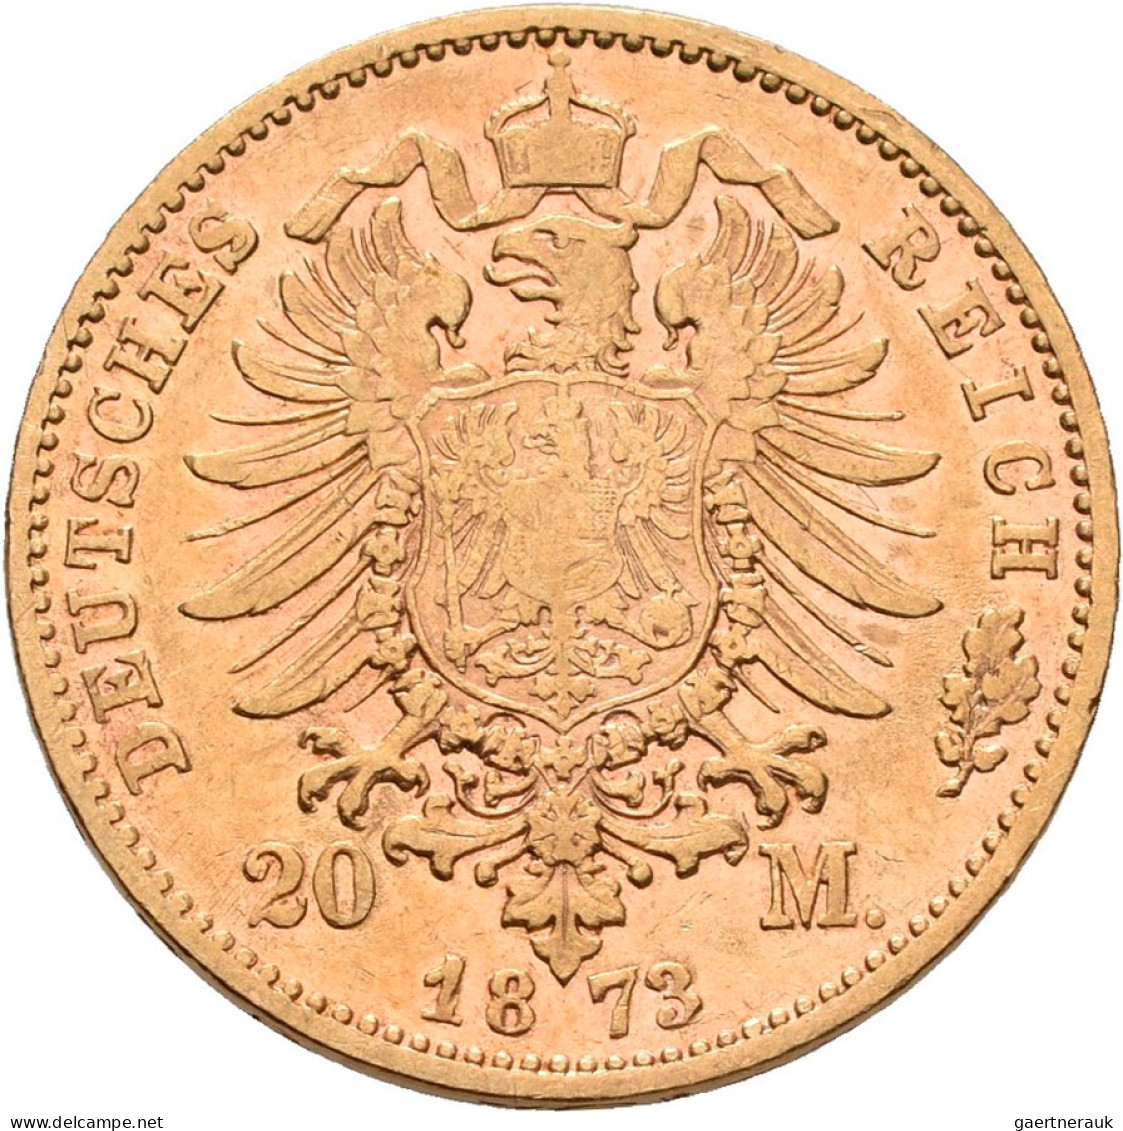 Bayern - Anlagegold: Kleine Sammlung Mit 1 X 10 Mark Sowie 5 X 20 Mark Von Ludwi - 5, 10 & 20 Mark Gold